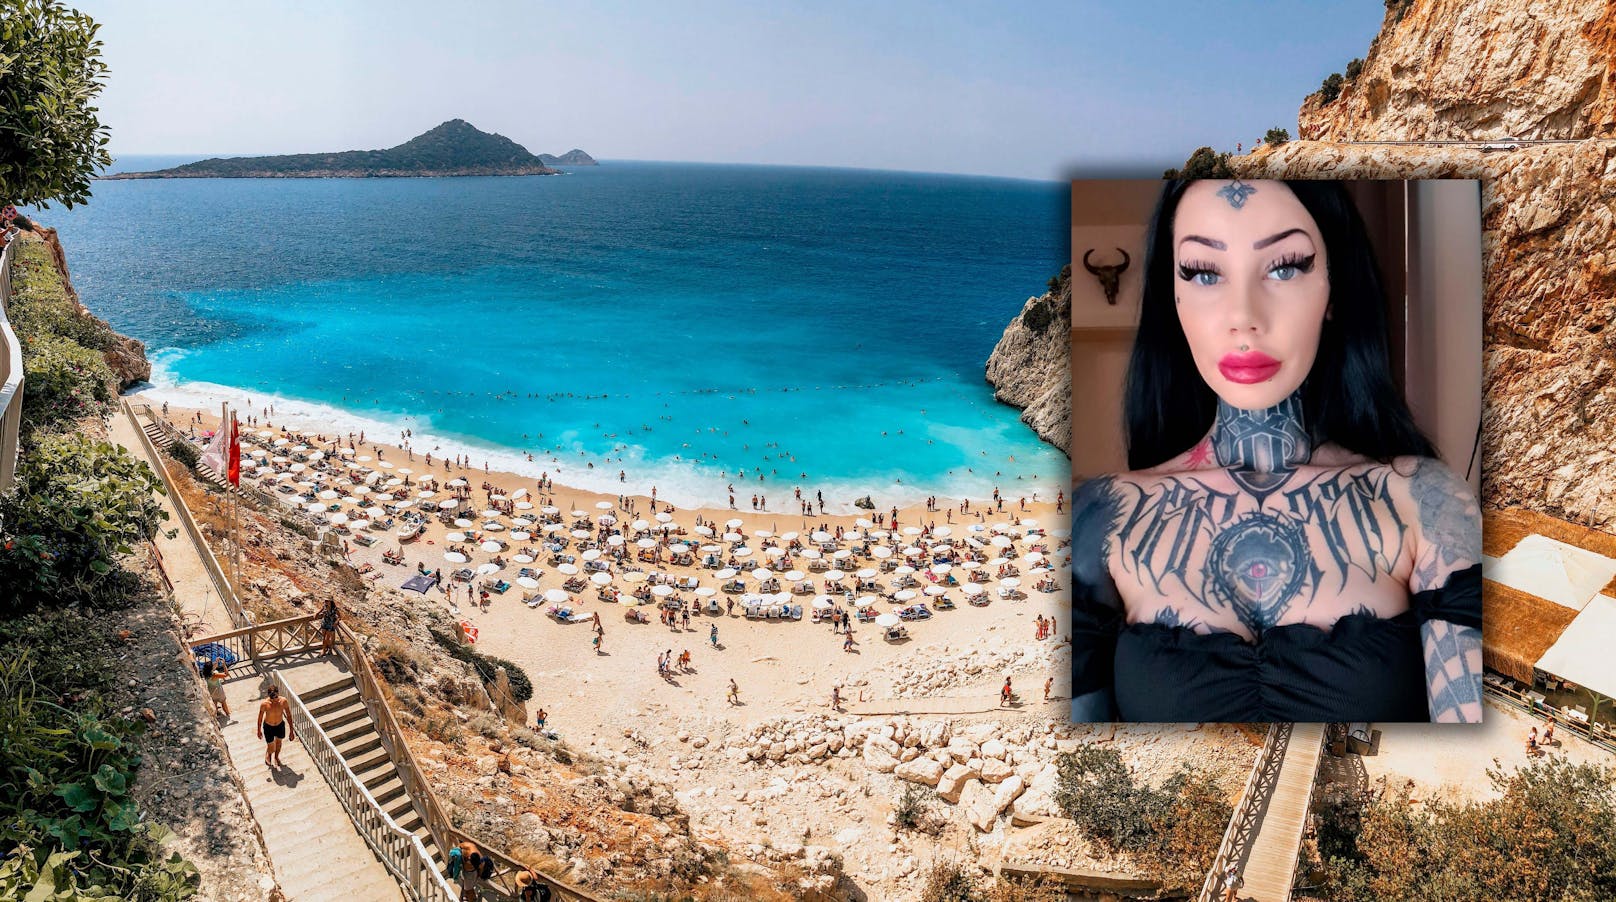 Tattoo-Model tappt in Türkei in 413€ teure Roaming-Falle